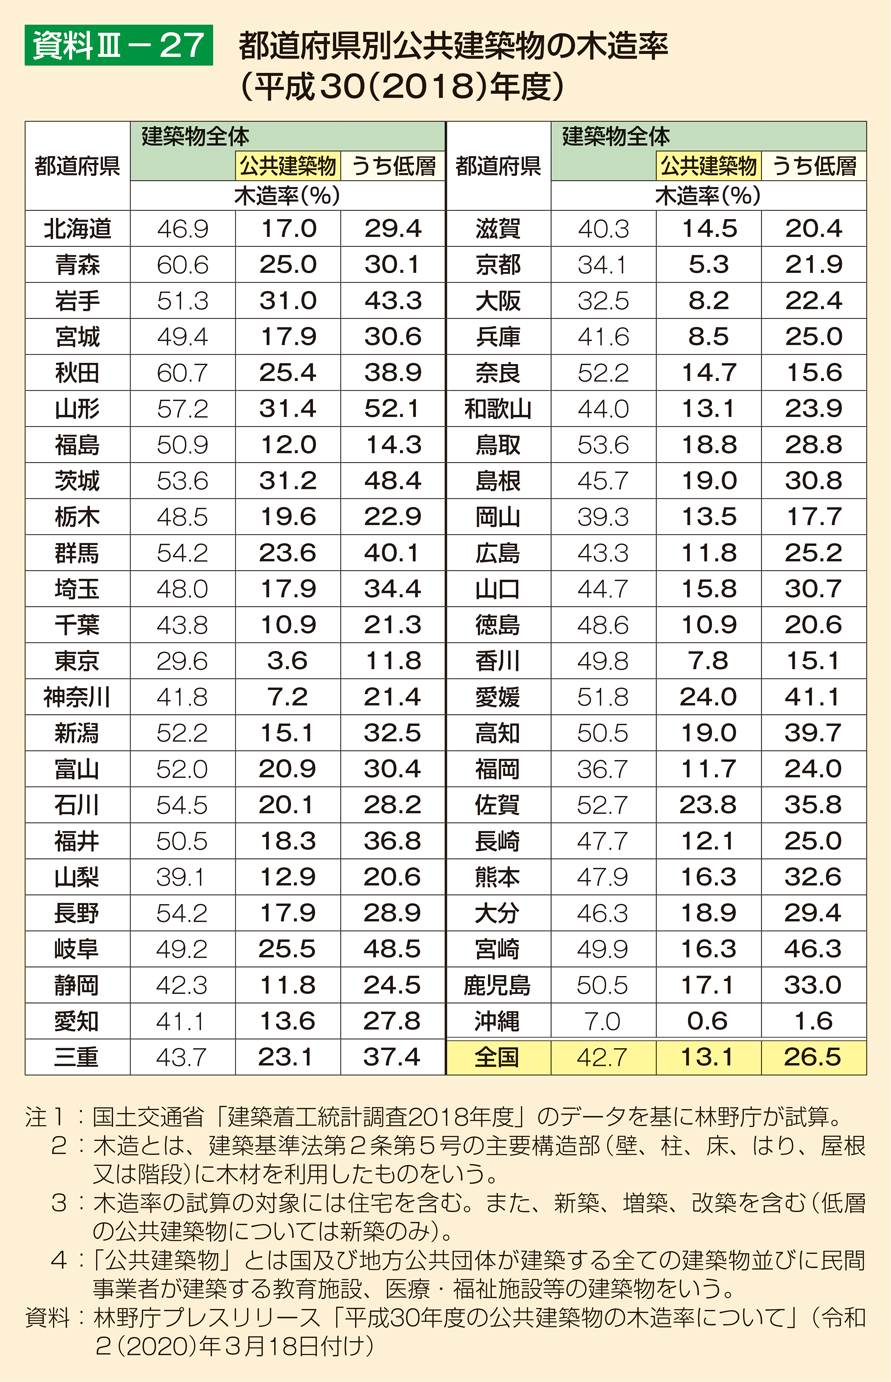 資料3-27 都道府県別公共建築物の木造率（平成30（2018）年度）